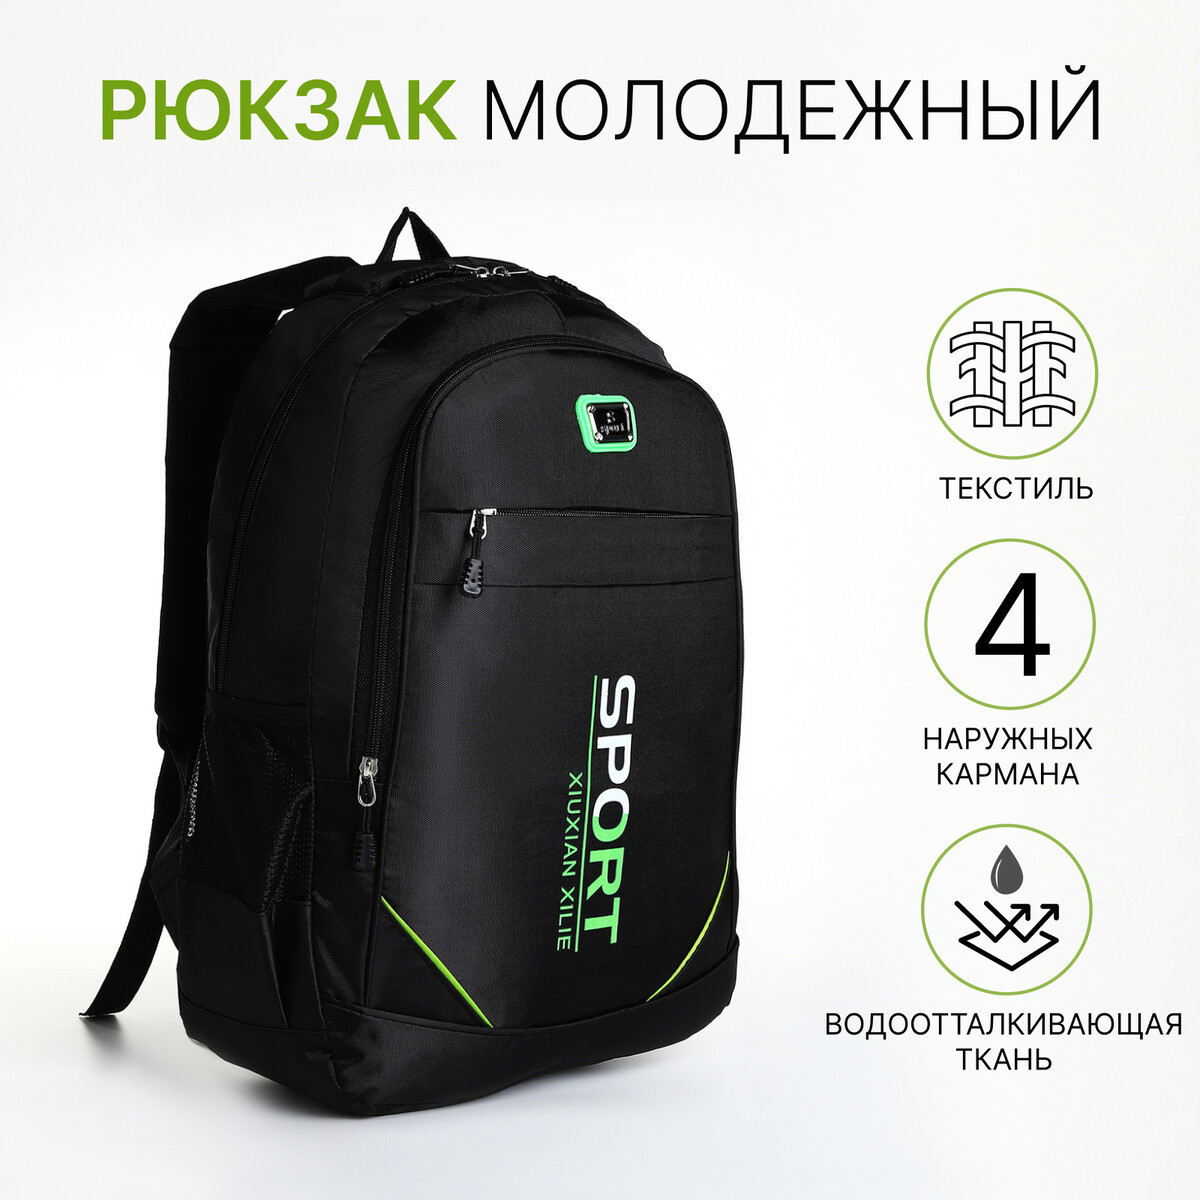 Рюкзак молодежный из текстиля на молнии, 4 кармана, цвет черный/зеленый рюкзак молодежный из текстиля на молнии 3 кармана сумка держатель для чемодана зеленый